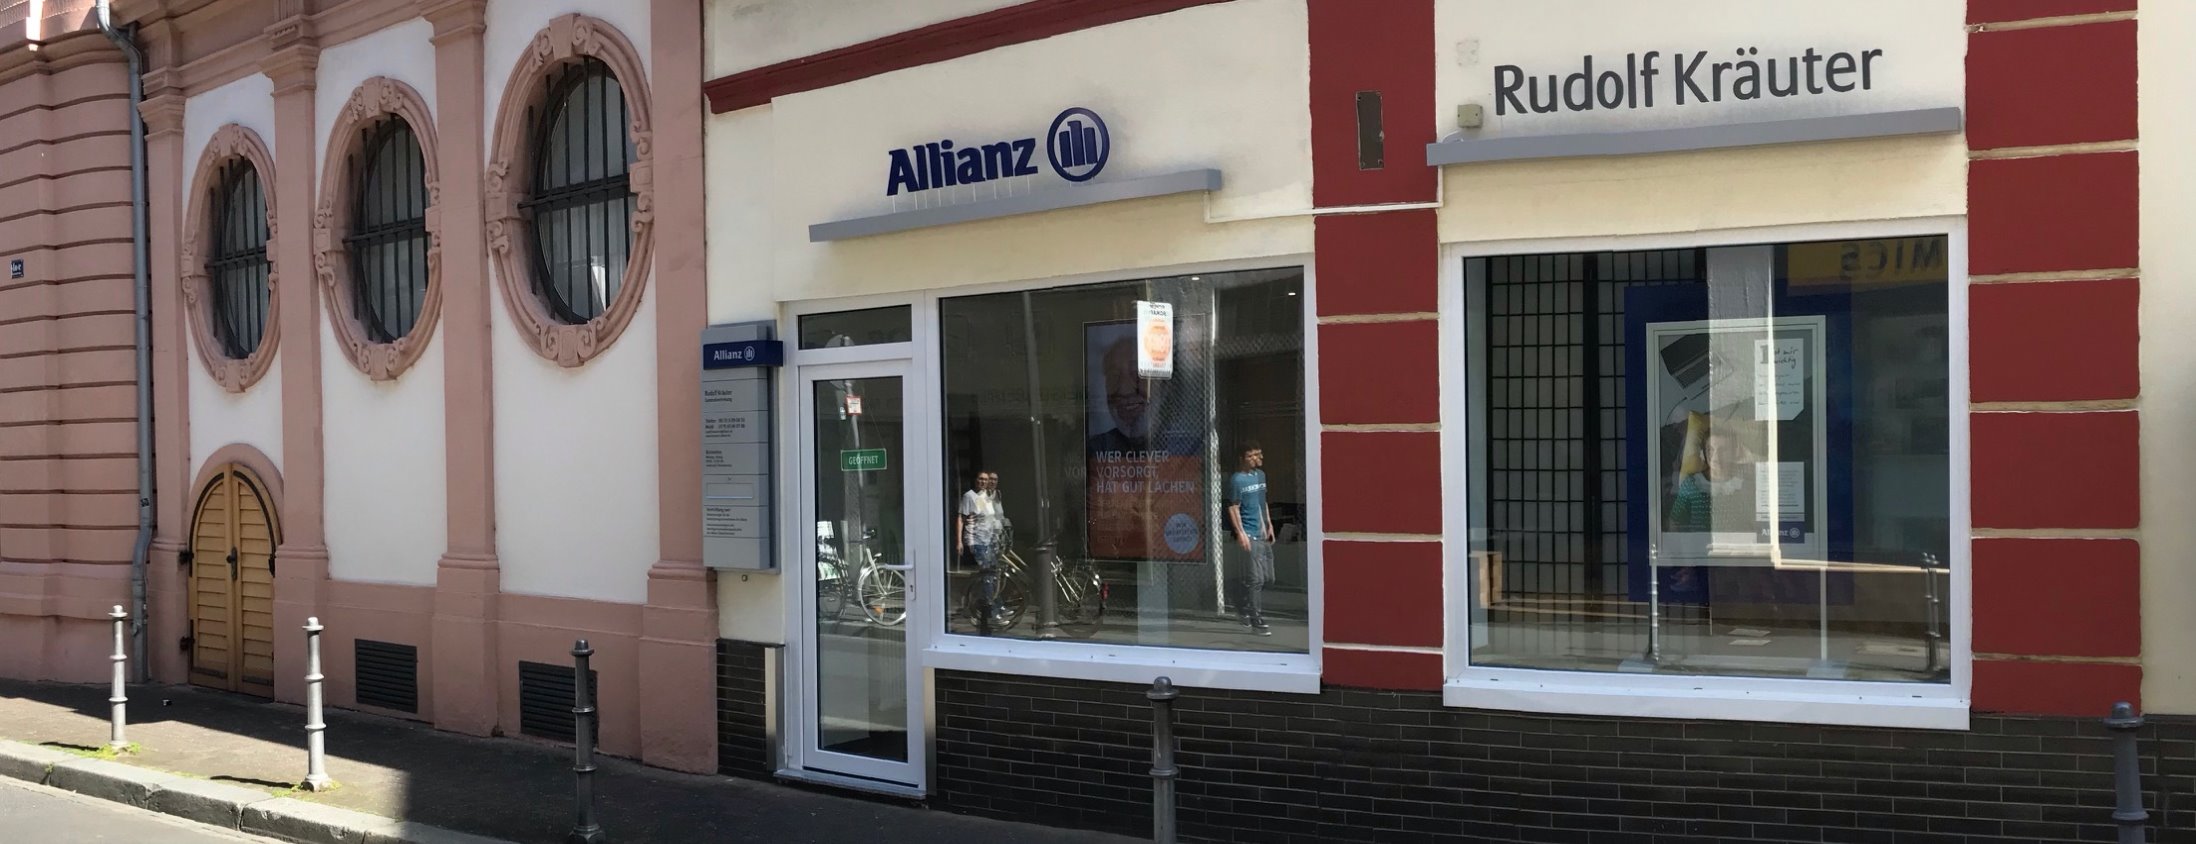 Allianz Versicherung Rudolf Kräuter Mainz - Titelbild